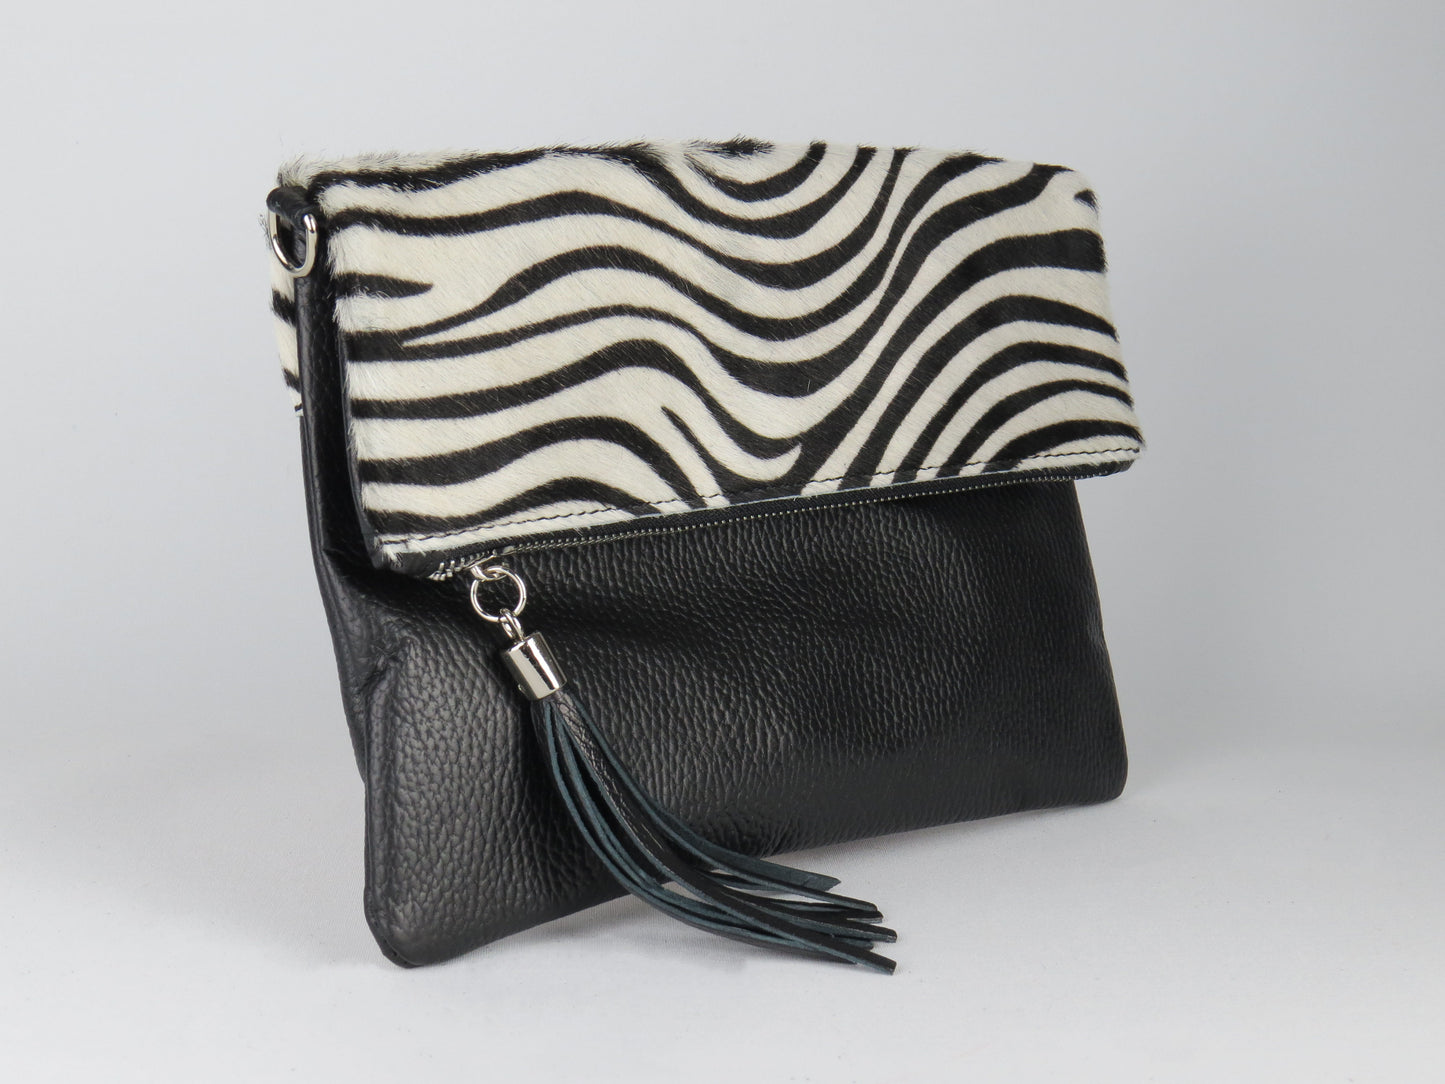 Zebra Print Foldover Clutch Bag